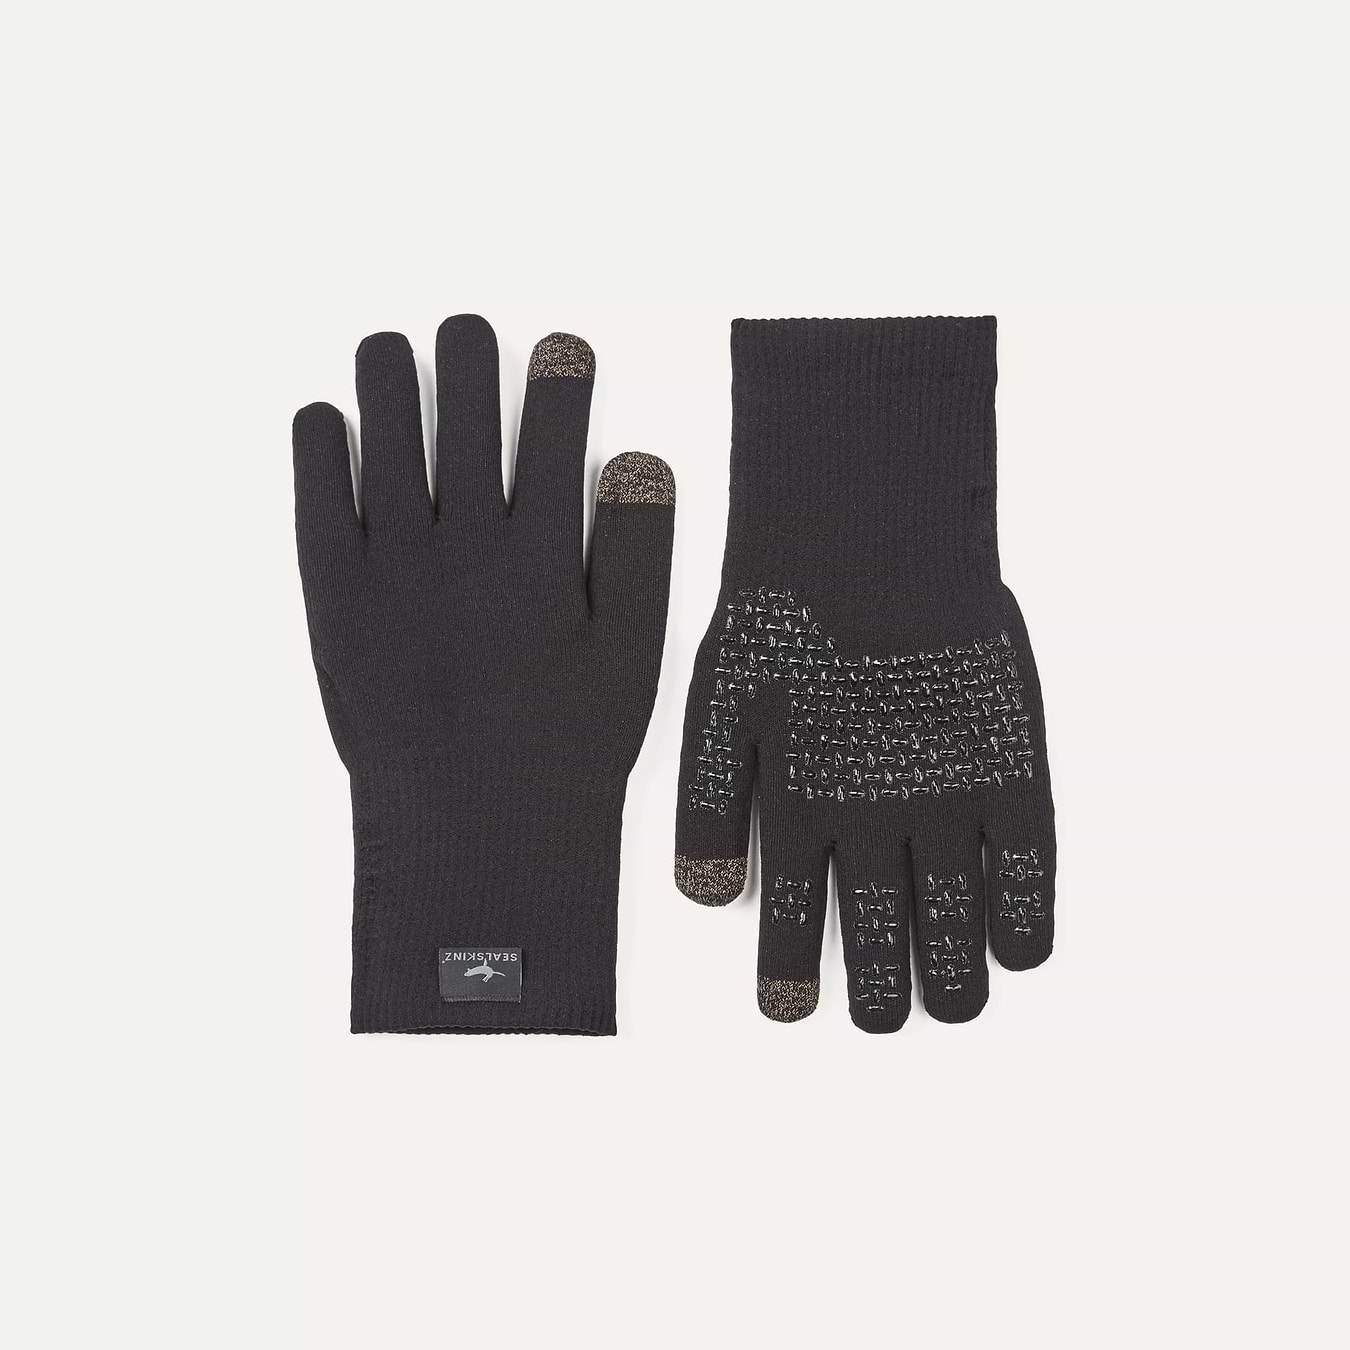 Ultra Grip-handschoenen